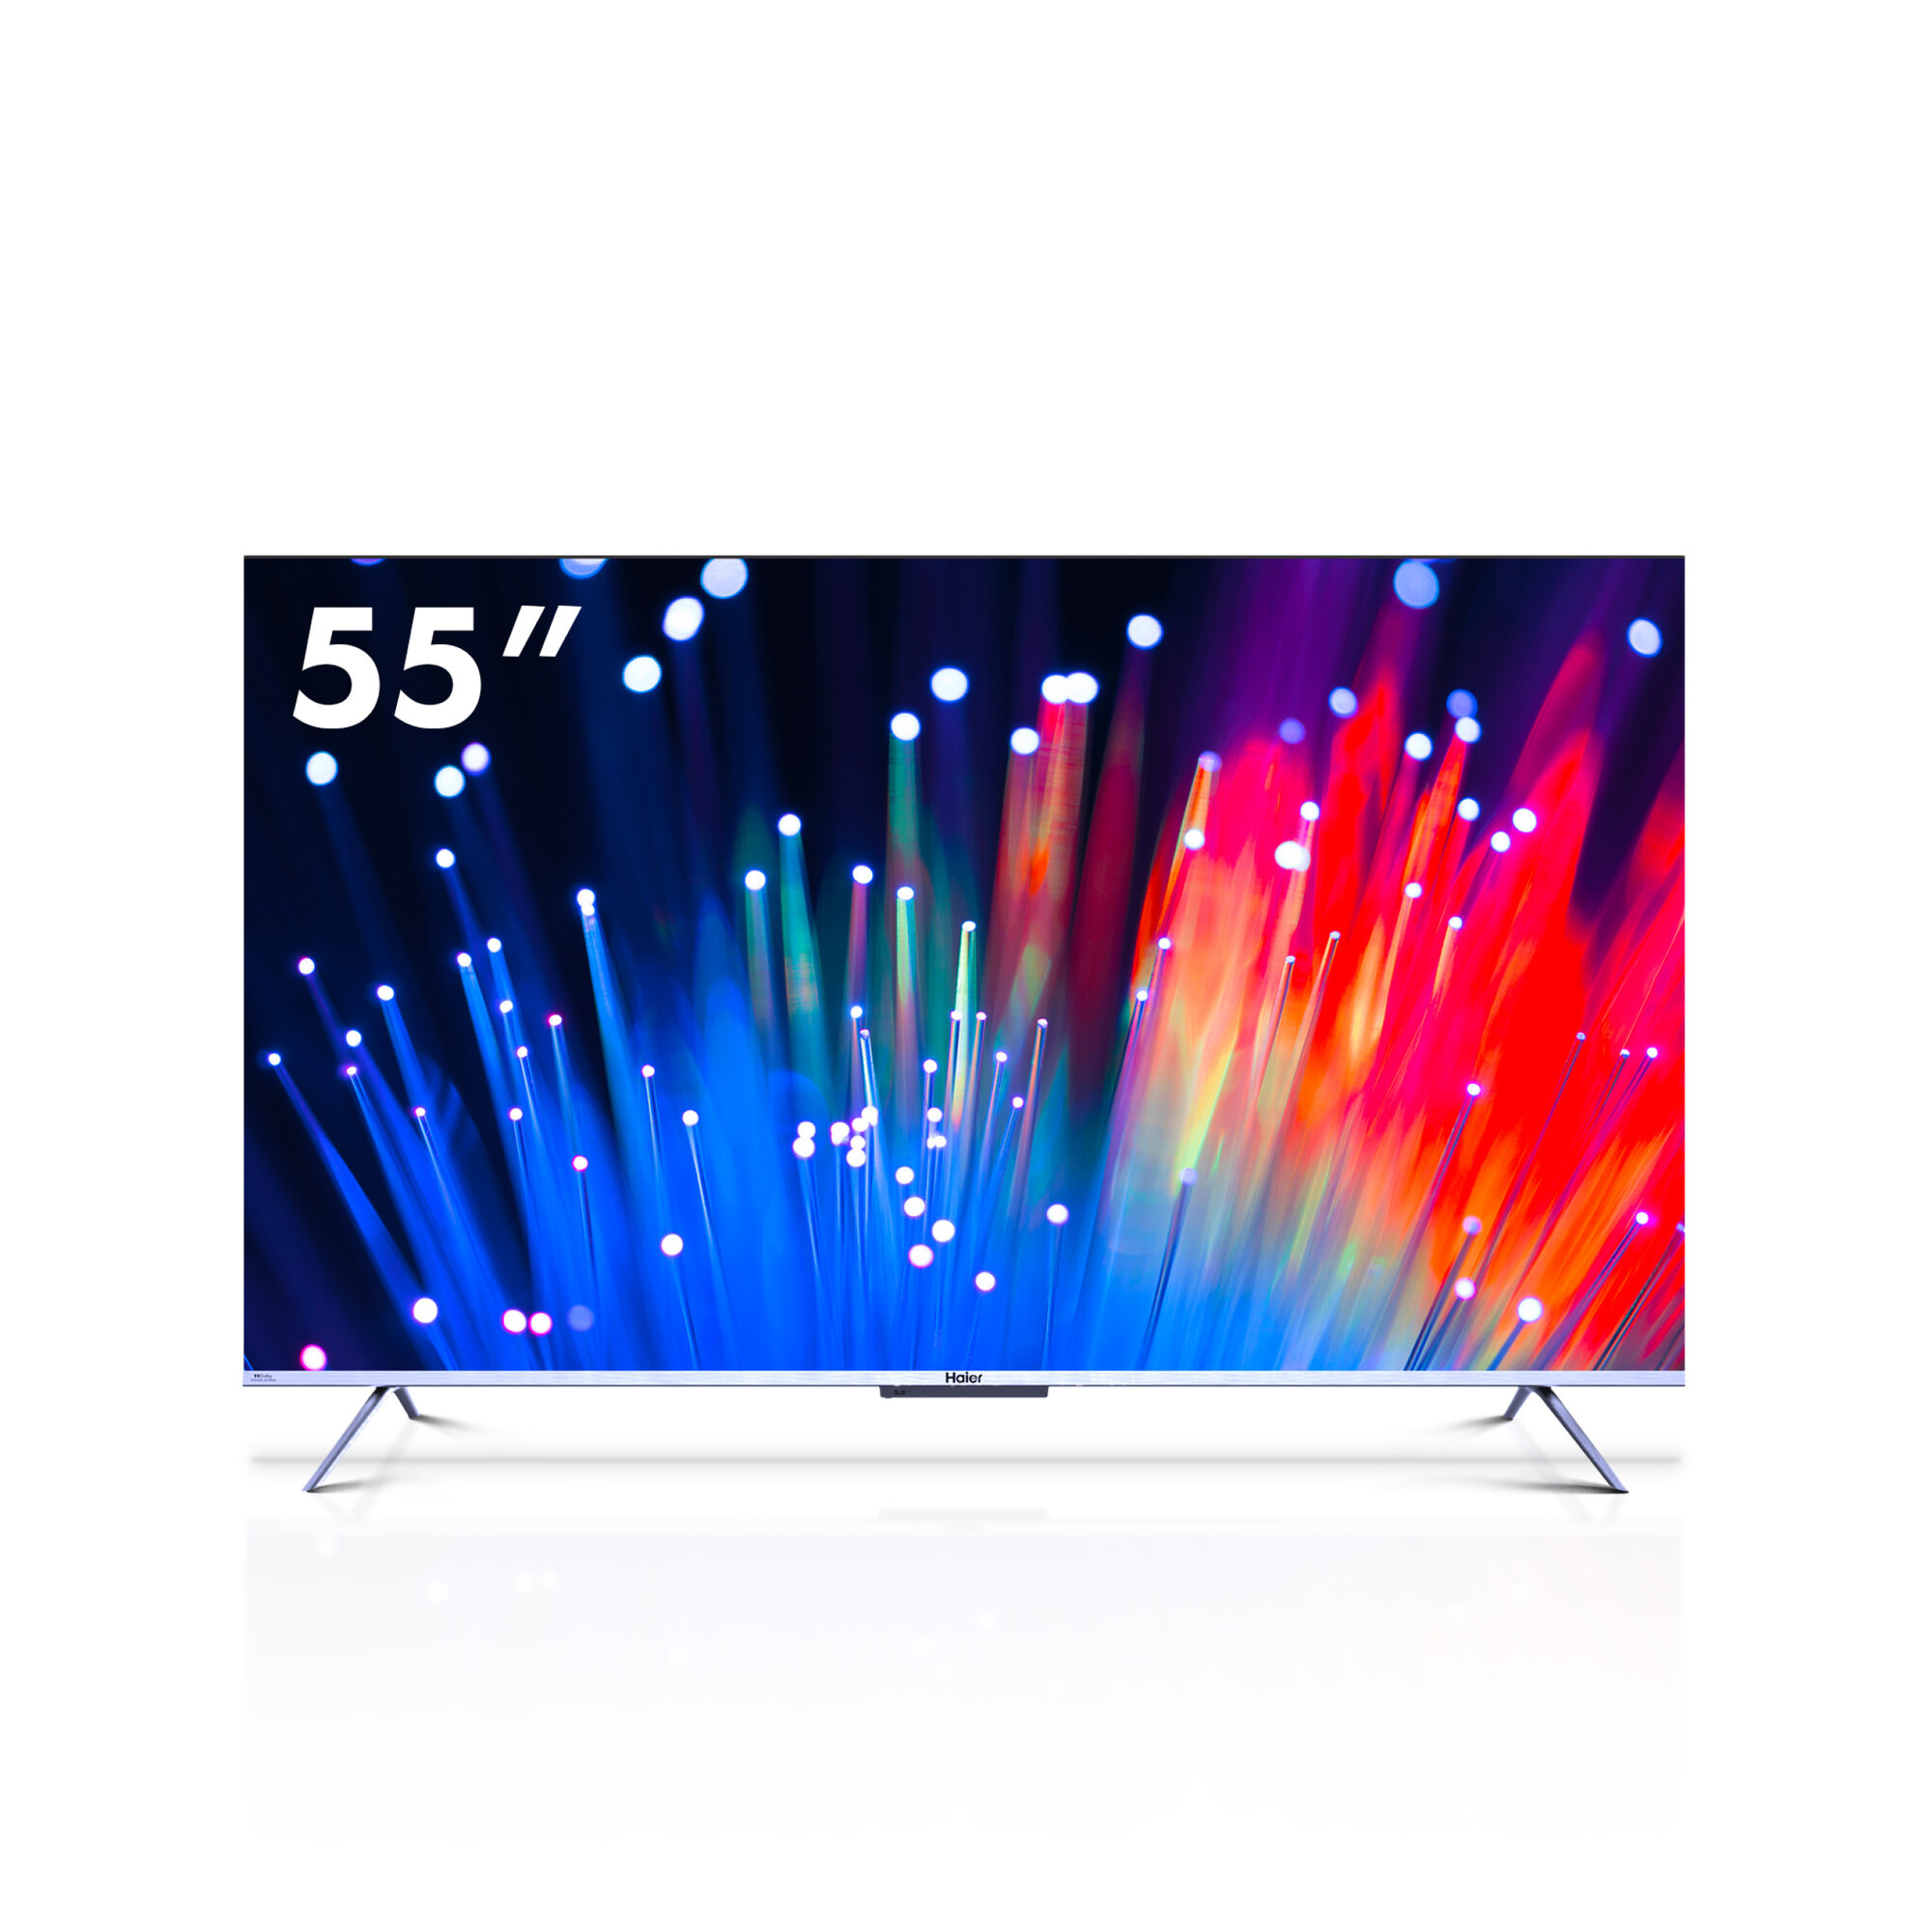 55" Телевизор Haier 55 Smart TV S3 HDR, LED, QLED, HQLED